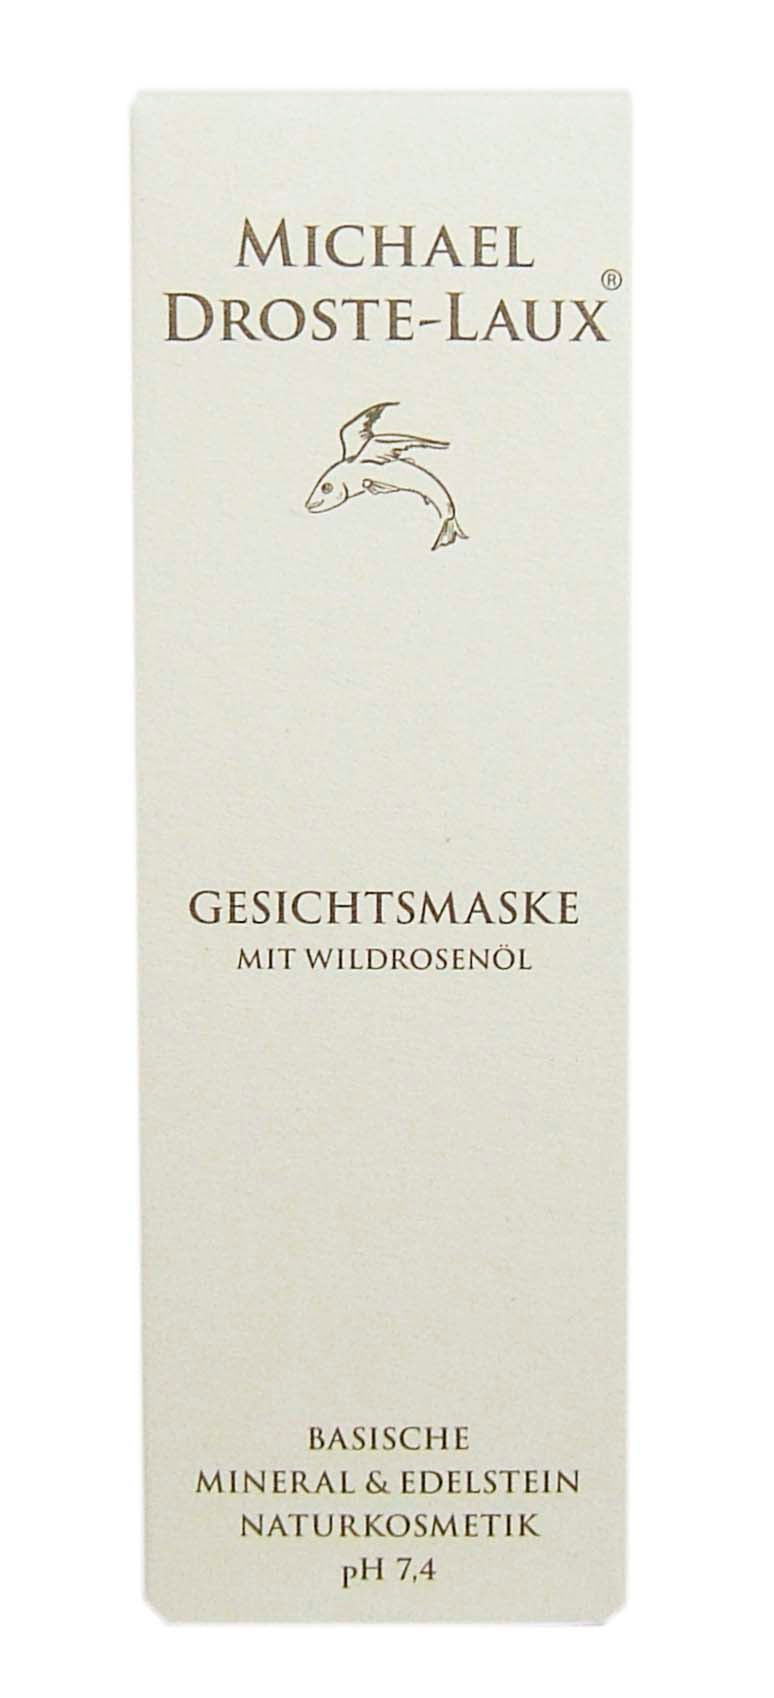 Michael Droste-Laux - Gesichtsmaske mit Wildrosenöl - 50 ml